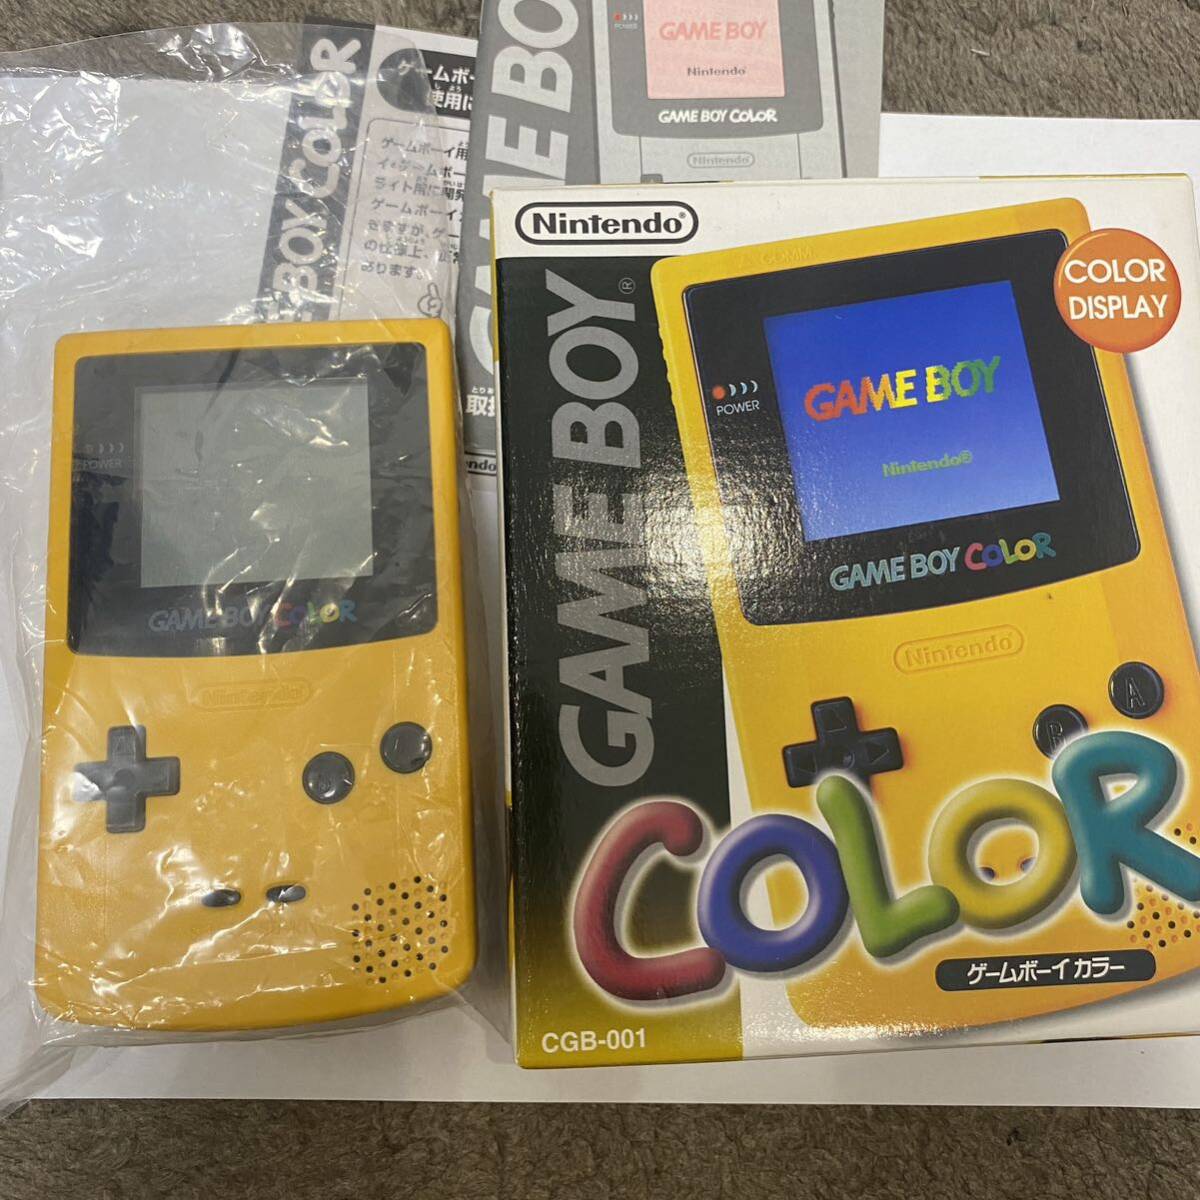  Game Boy цвет # почти новый товар не использовался популярный цвет желтый очень редкий GBC nintendo инструкция коробка Nintendo Nintendo Game Boy 